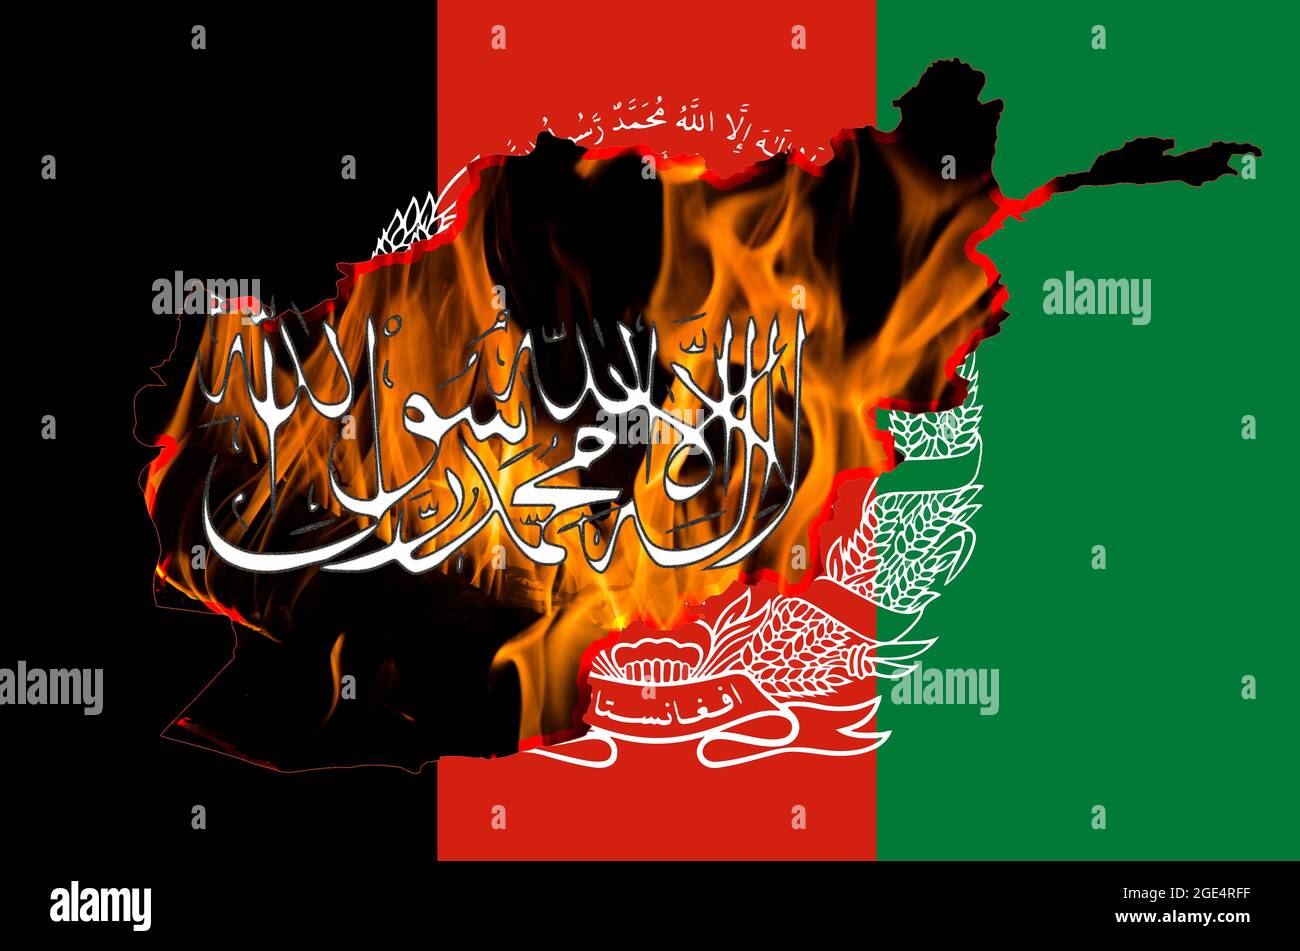 Bandiera dell'Afghanistan, insegne dei talebani e mappa del paese con sfondo fuoco acceso. Concetto di problema dell'Afghanistan. Foto Stock